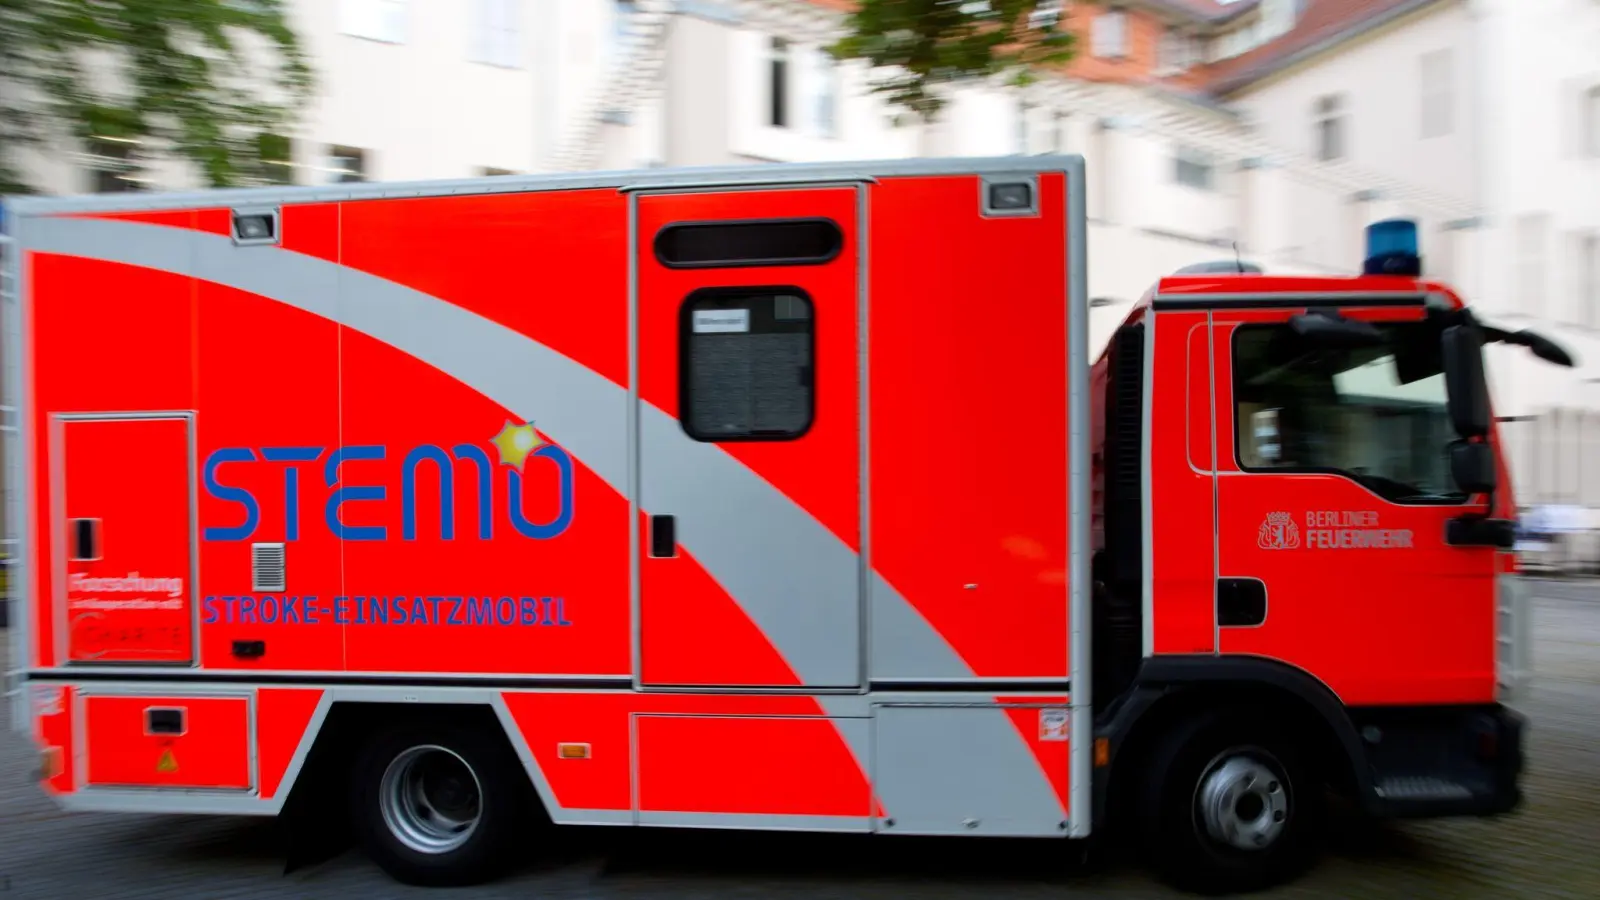 Das Berliner Stroke-Einsatz-Mobil (STEMO): Mithilfe spezieller Rettungsmobile können Schlaganfall-Patienten früher umfassend versorgt werden. (Foto: picture alliance / dpa)